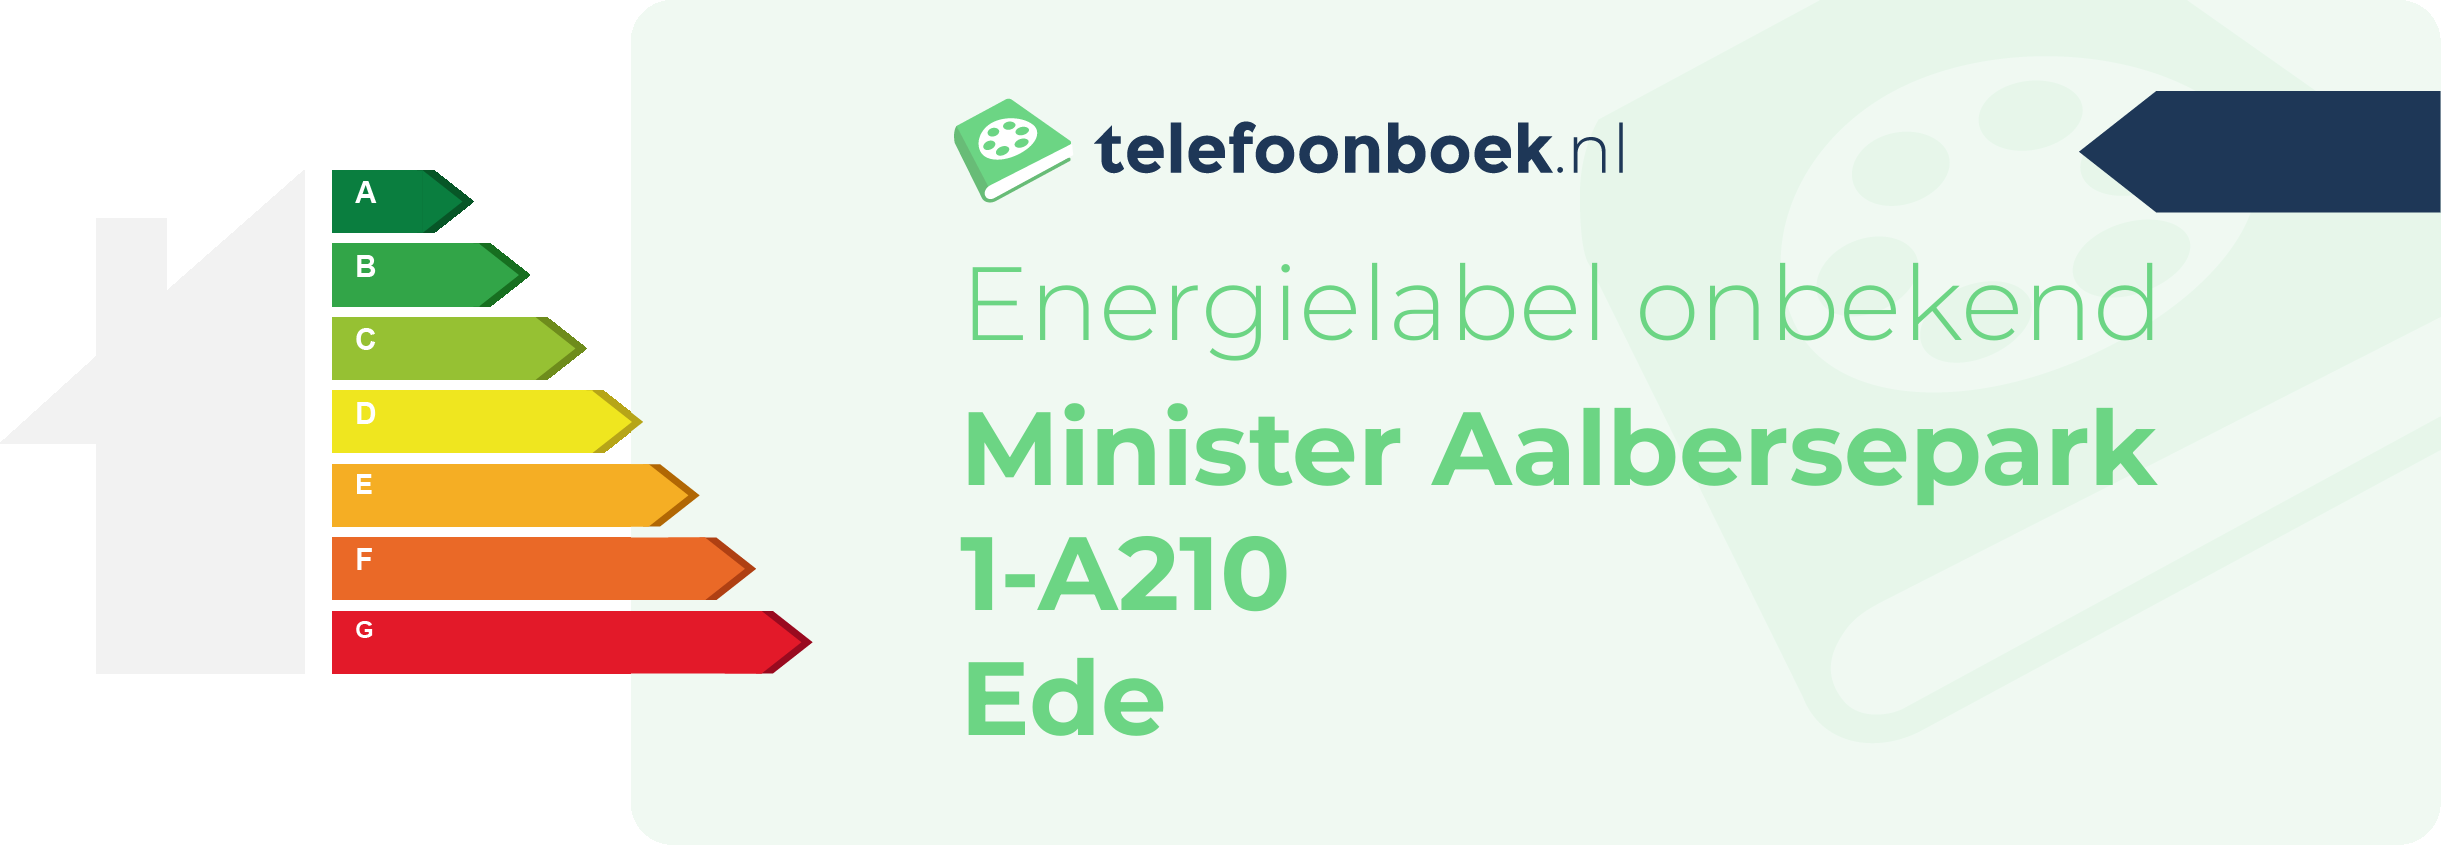 Energielabel Minister Aalbersepark 1-A210 Ede